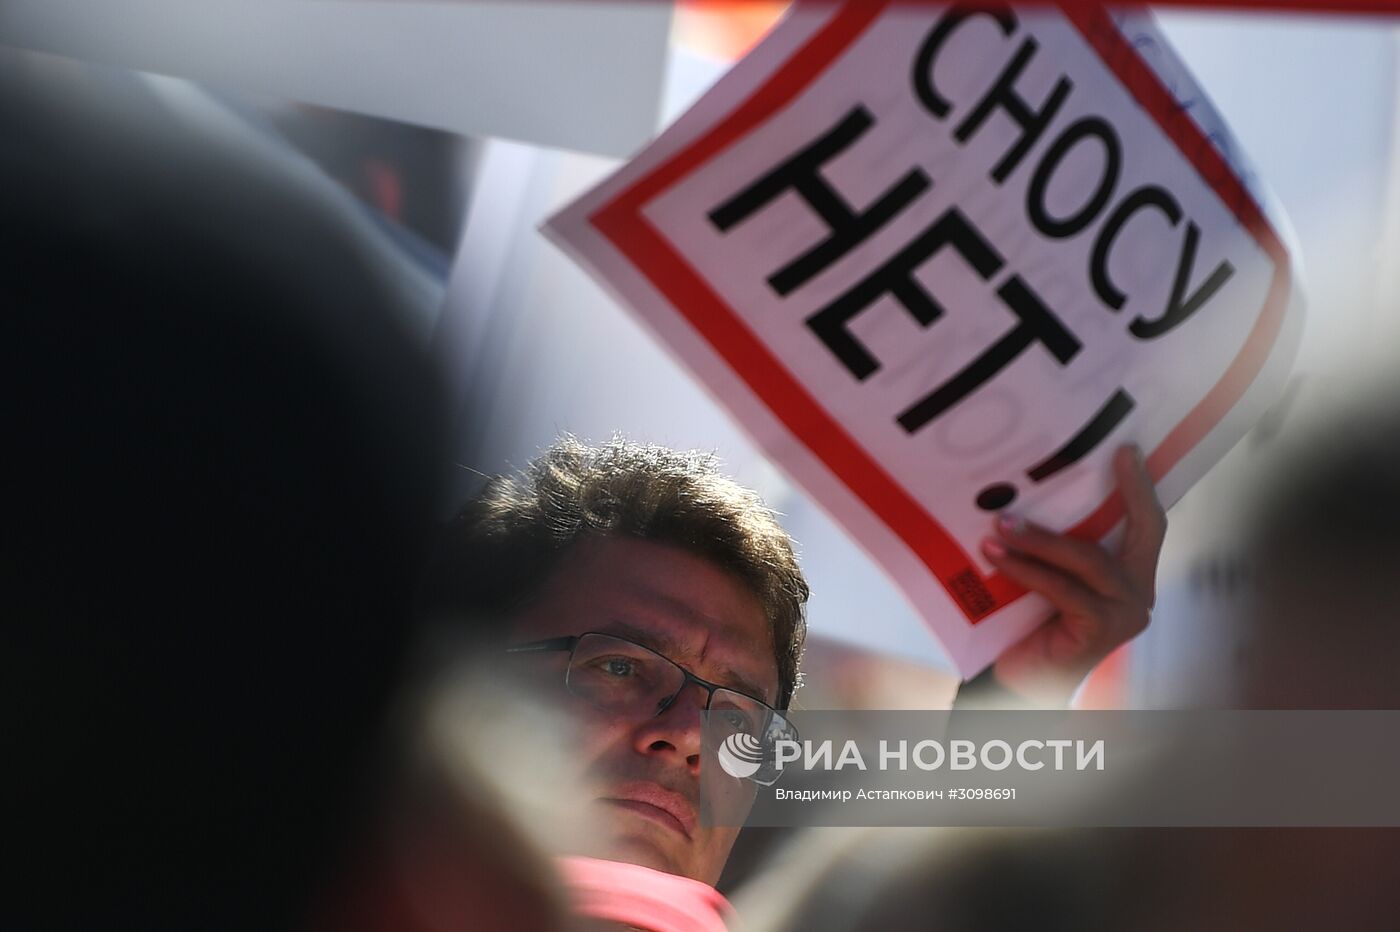 Митинг против сноса пятиэтажек в Москве